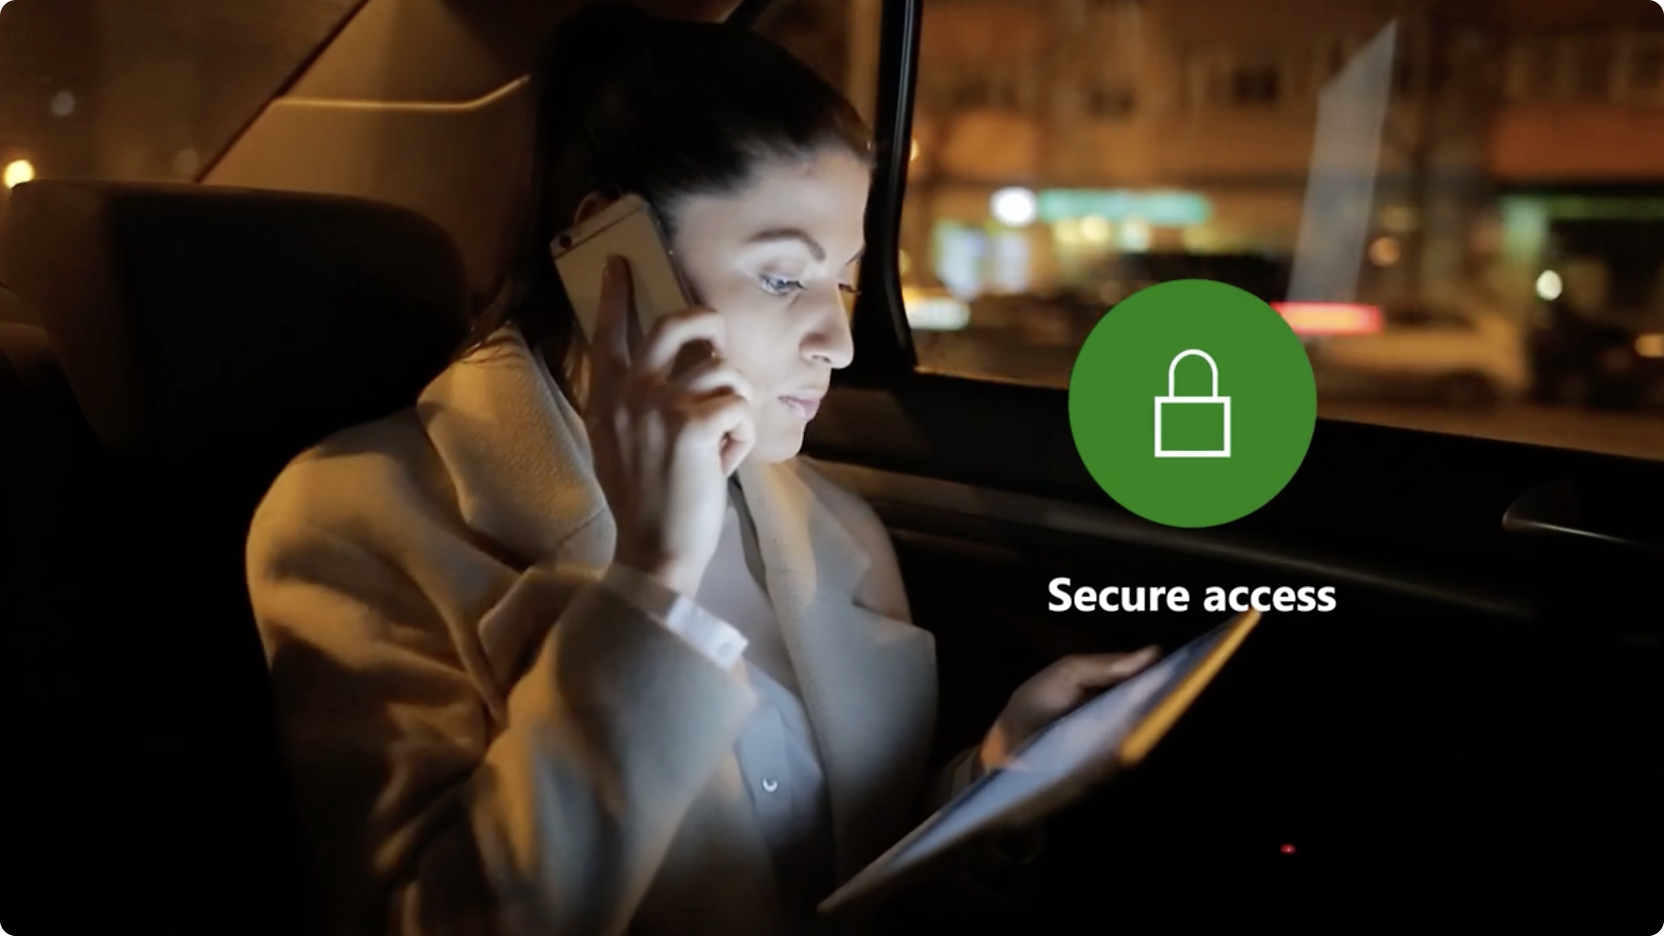 Uma mulher em um carro à noite falando no telefone e usando um tablet, com um ícone de "acesso seguro" na tela.